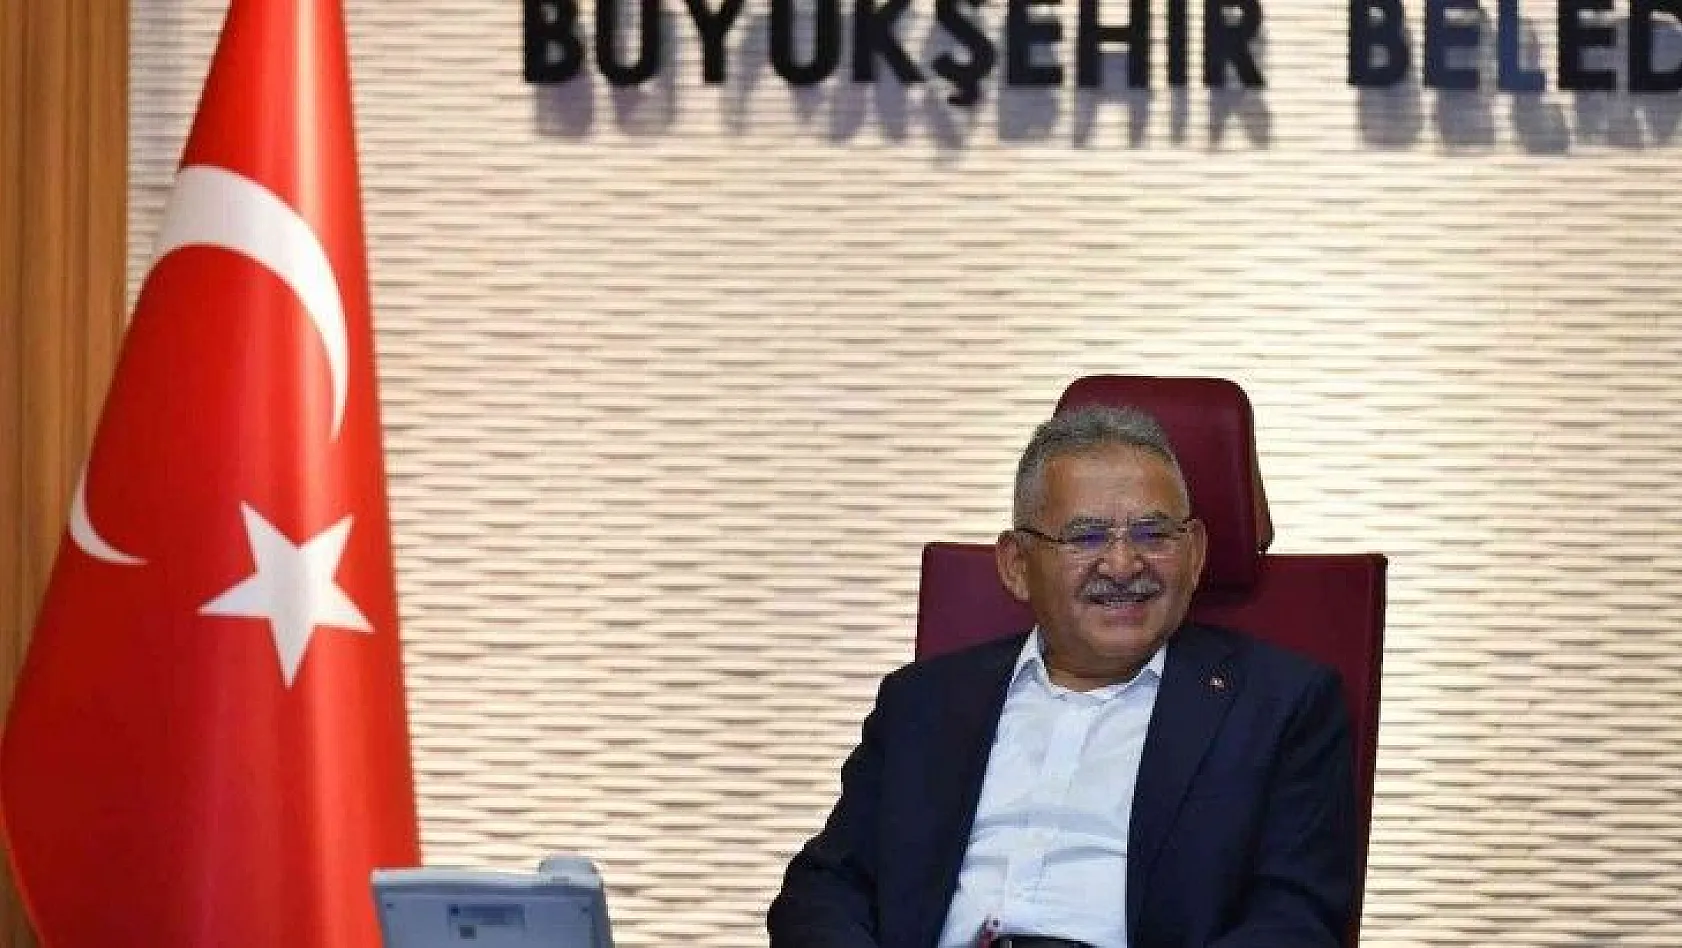 Kayseri Büyükşehir Belediyesi: Birinci olduk!